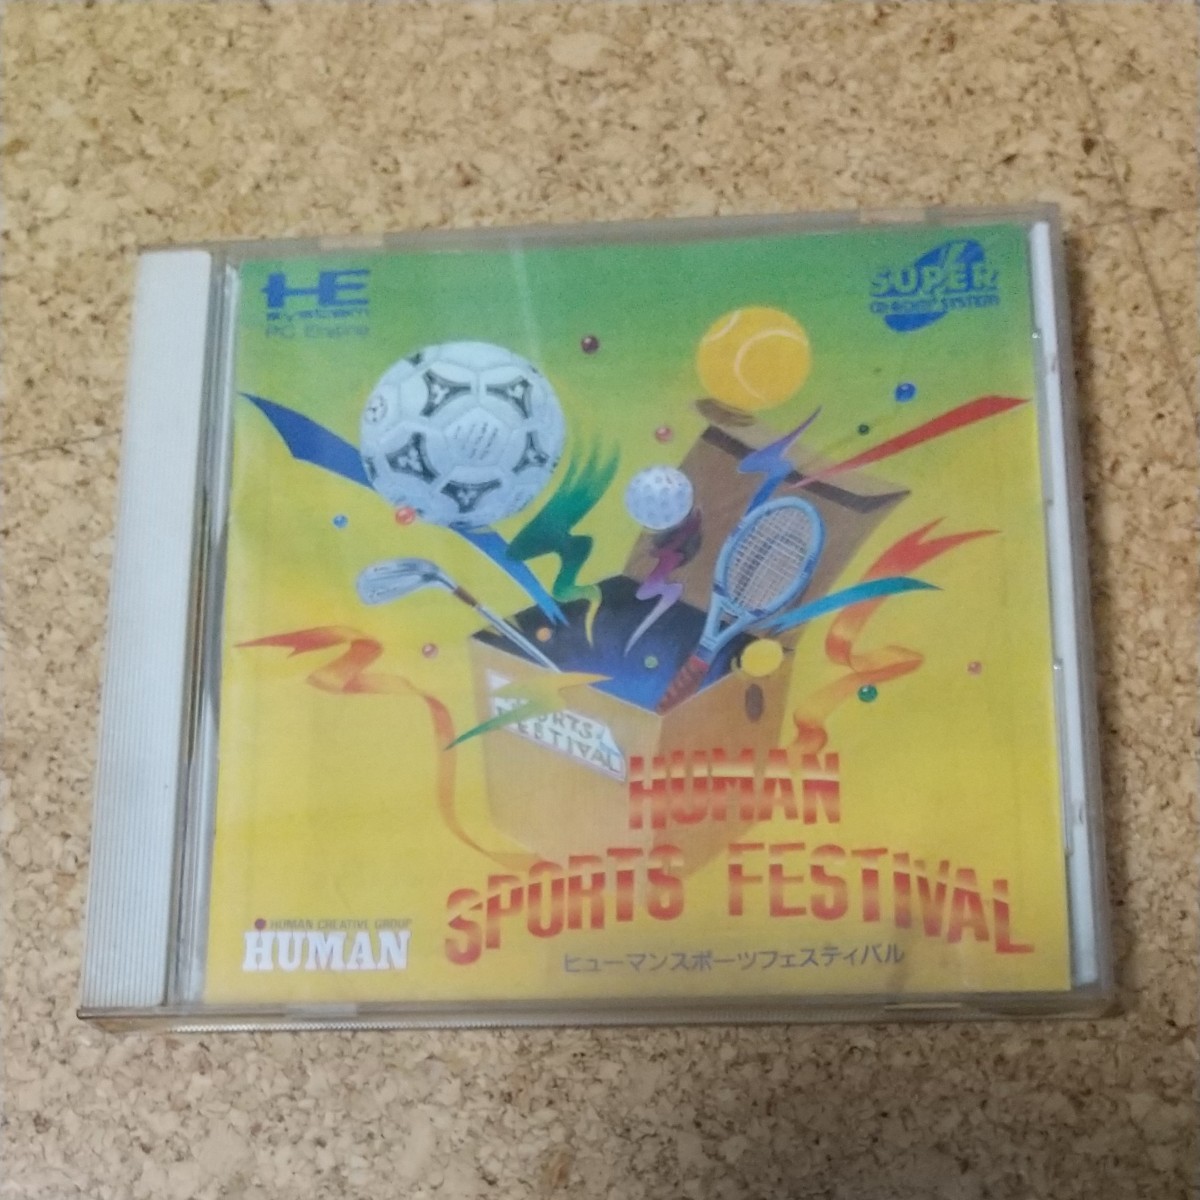 PCエンジン CD-ROM2 ヒューマンスポーツフェスティバル